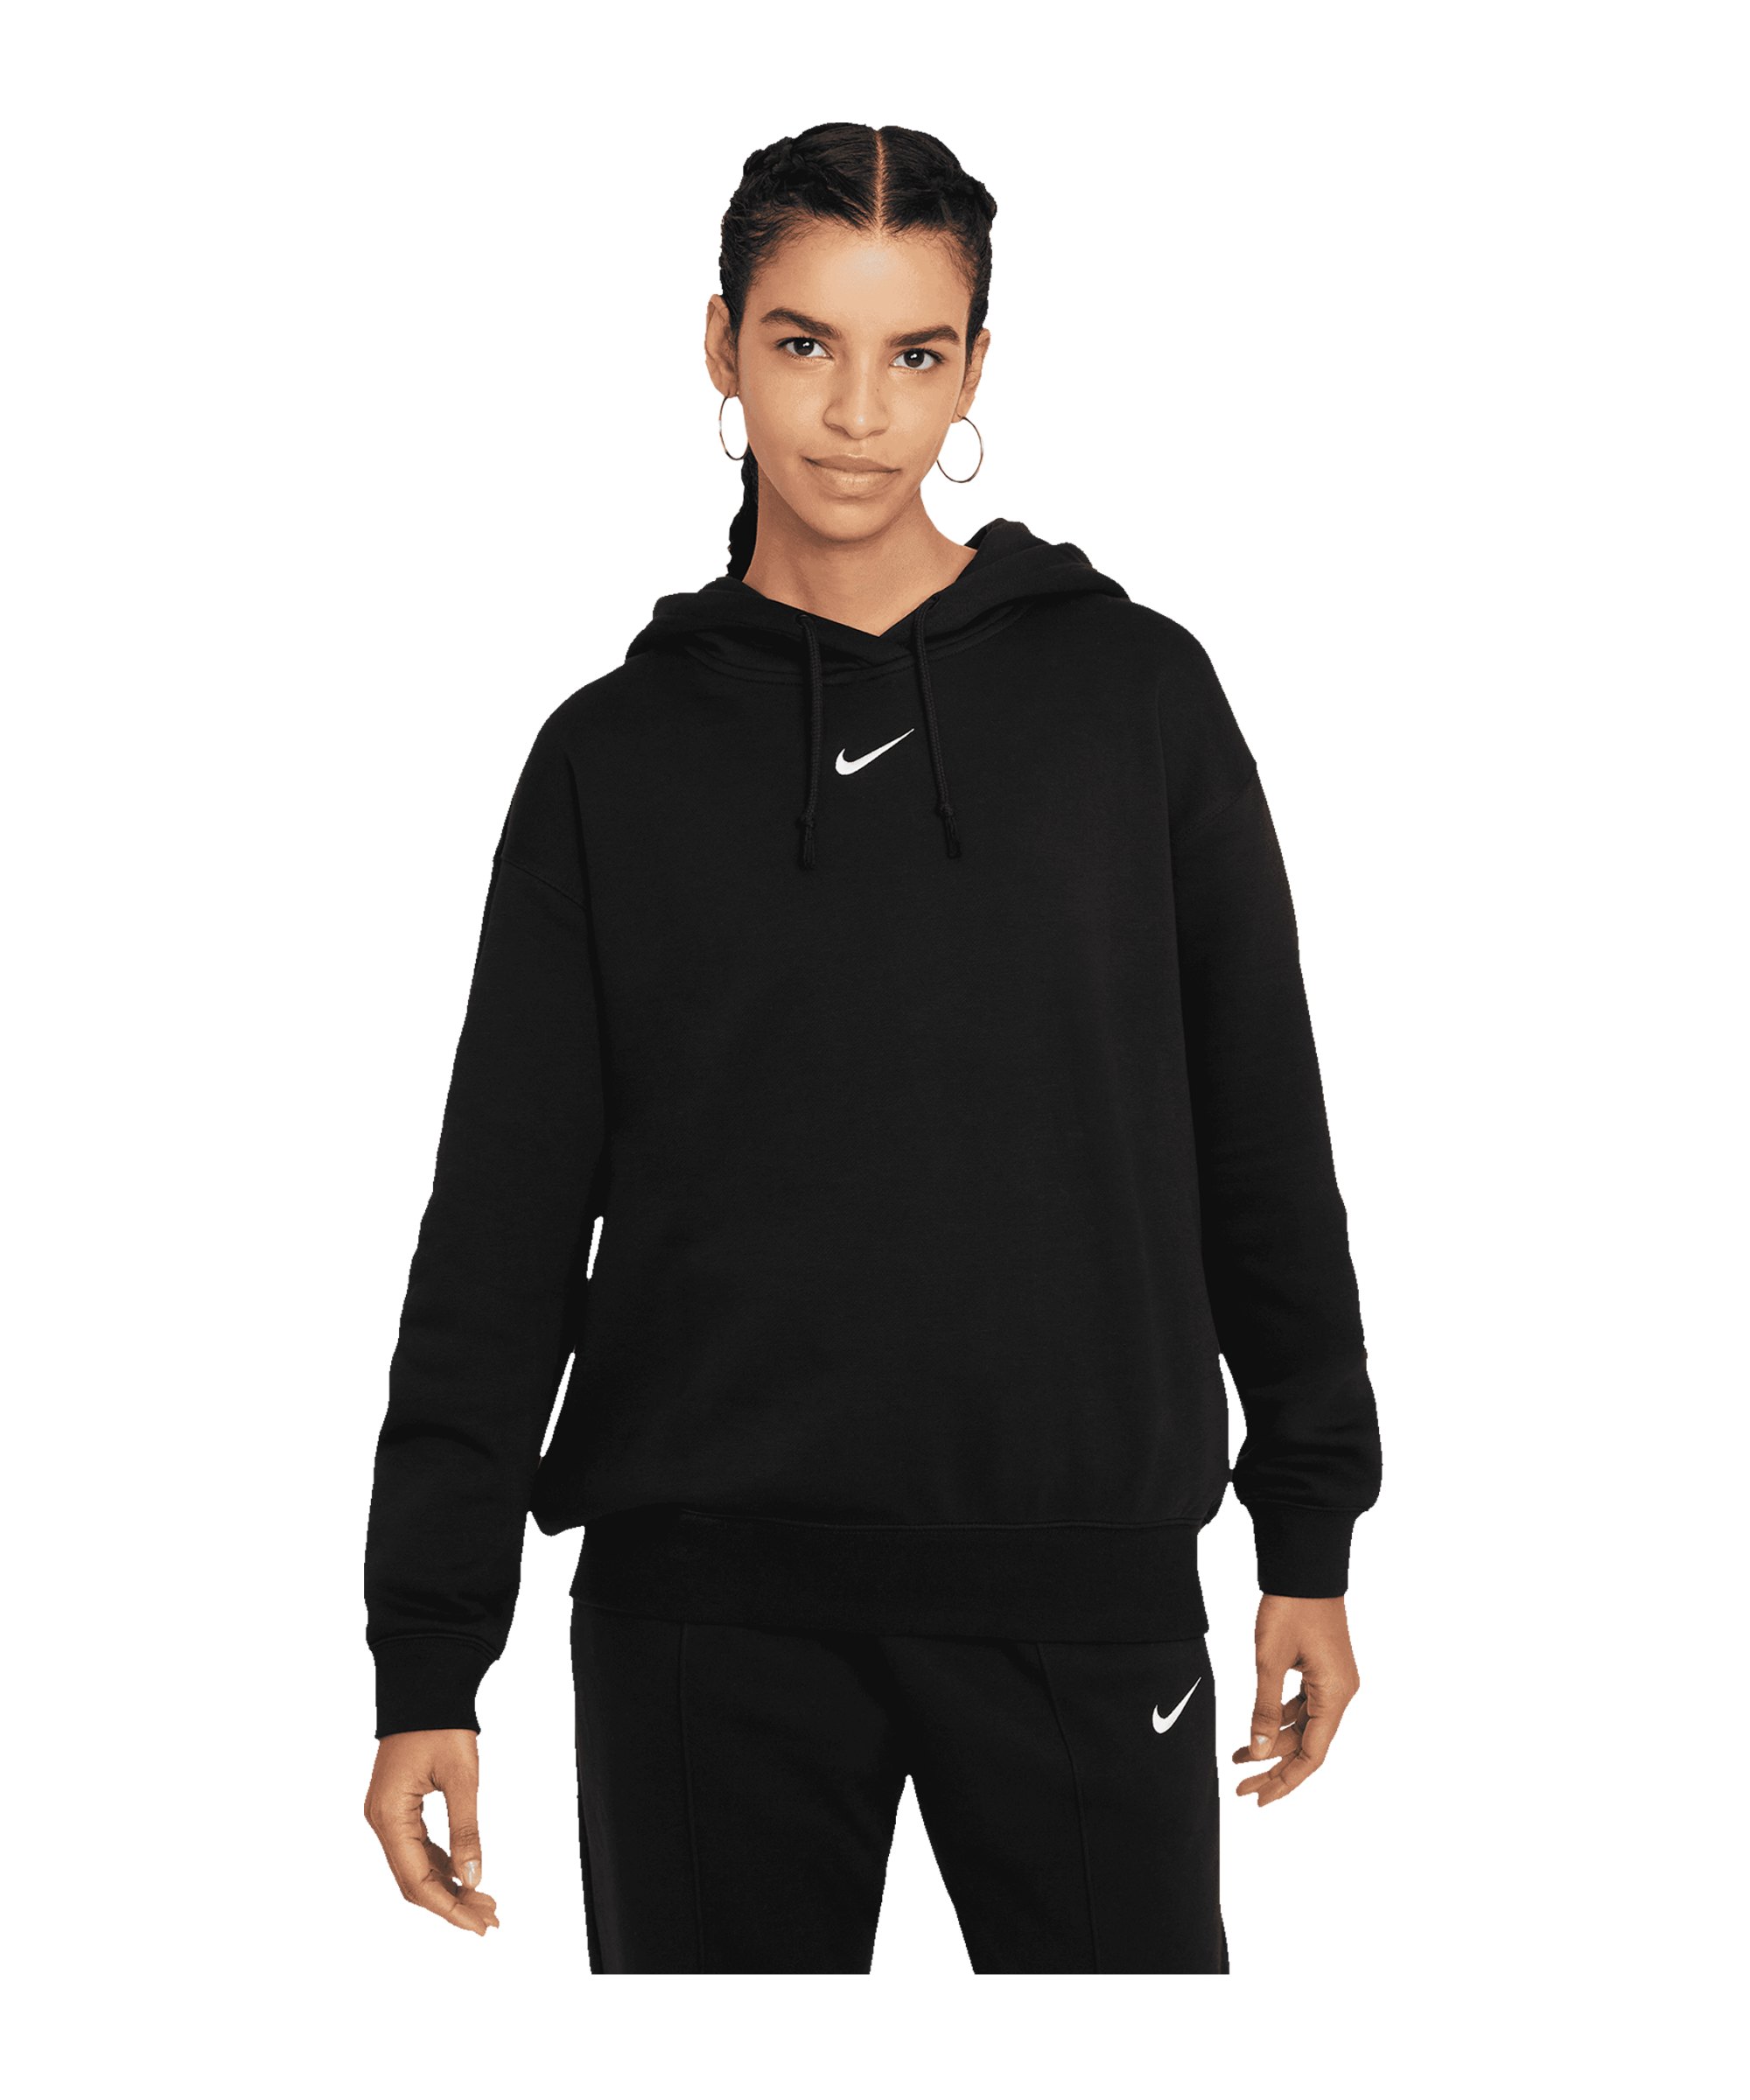 Nike Essentials Hoody Damen Schwarz F010 - schwarz